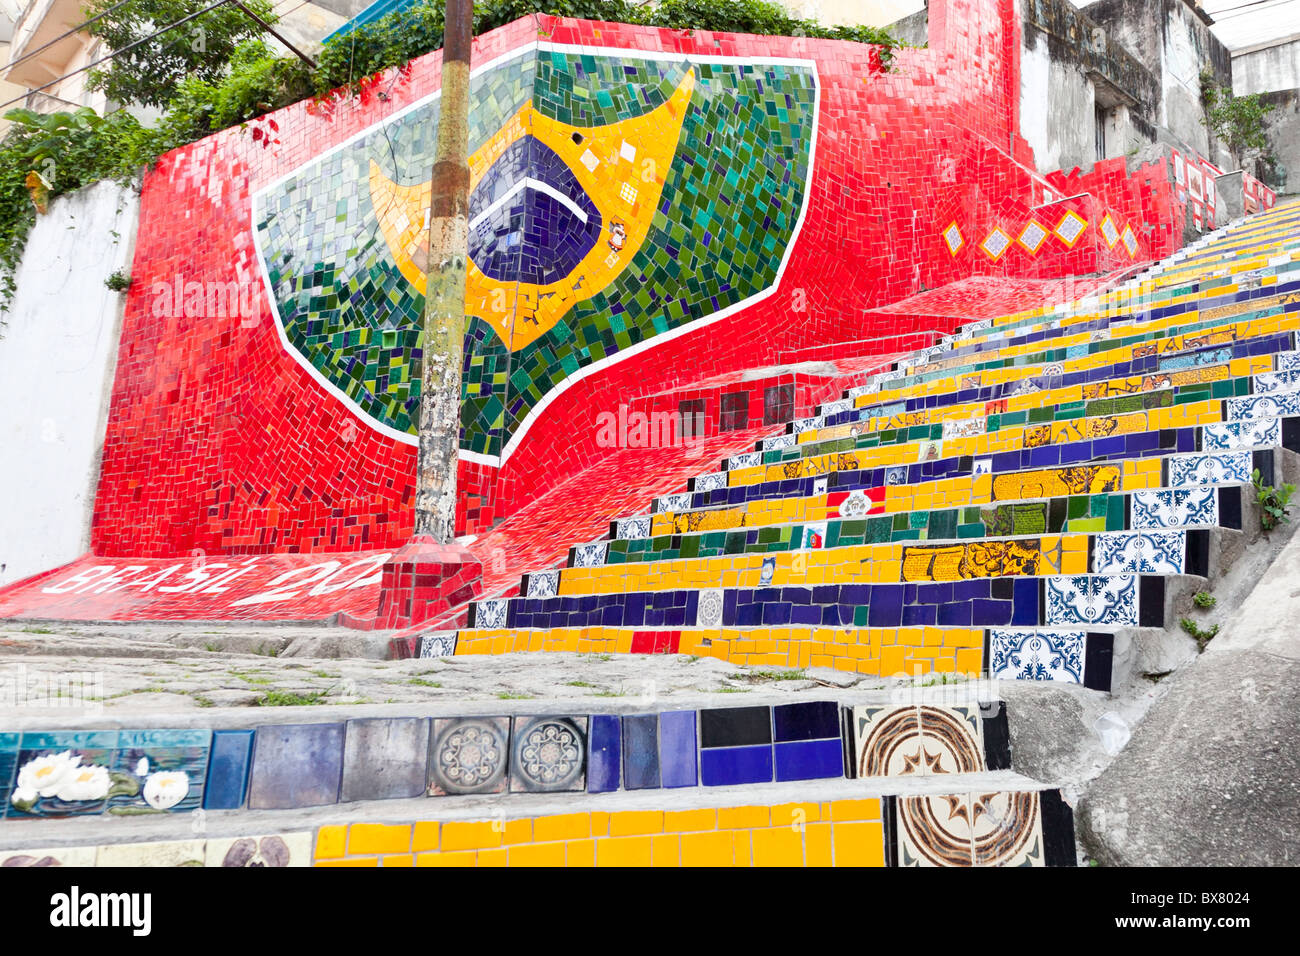 A mosaic tile Brazilian flag on the Escadaria Selarón in Rio de Janeiro, Brazil Stock Photo